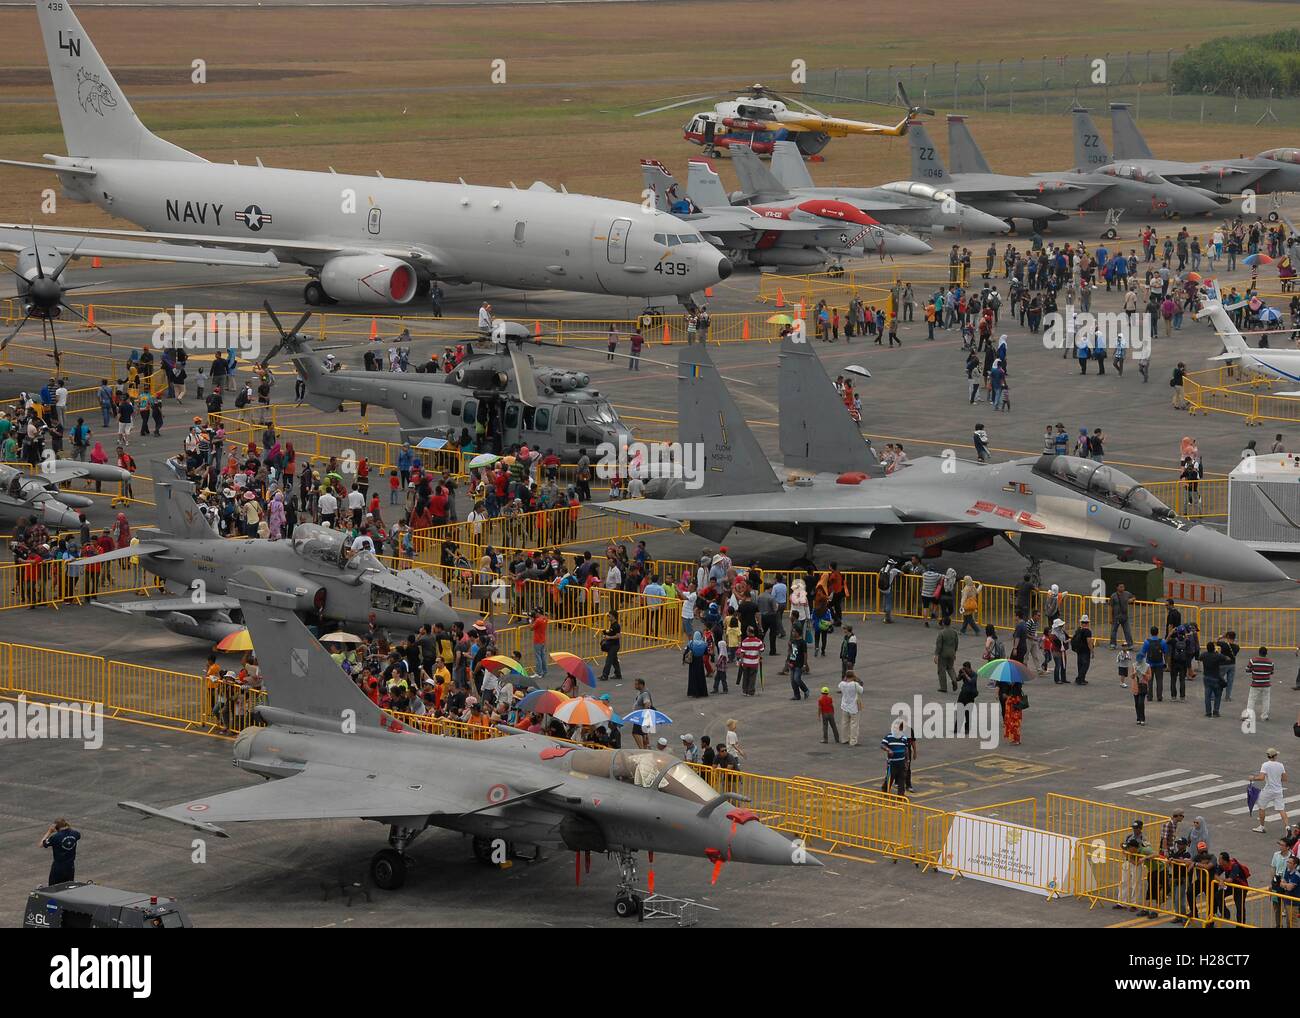 Les foules se rassemblent pour voir les avions militaires américains à l'Langkawi International Maritime and Aerospace Exhibition March 21, 2015 à Langkawi, Malaisie. Banque D'Images